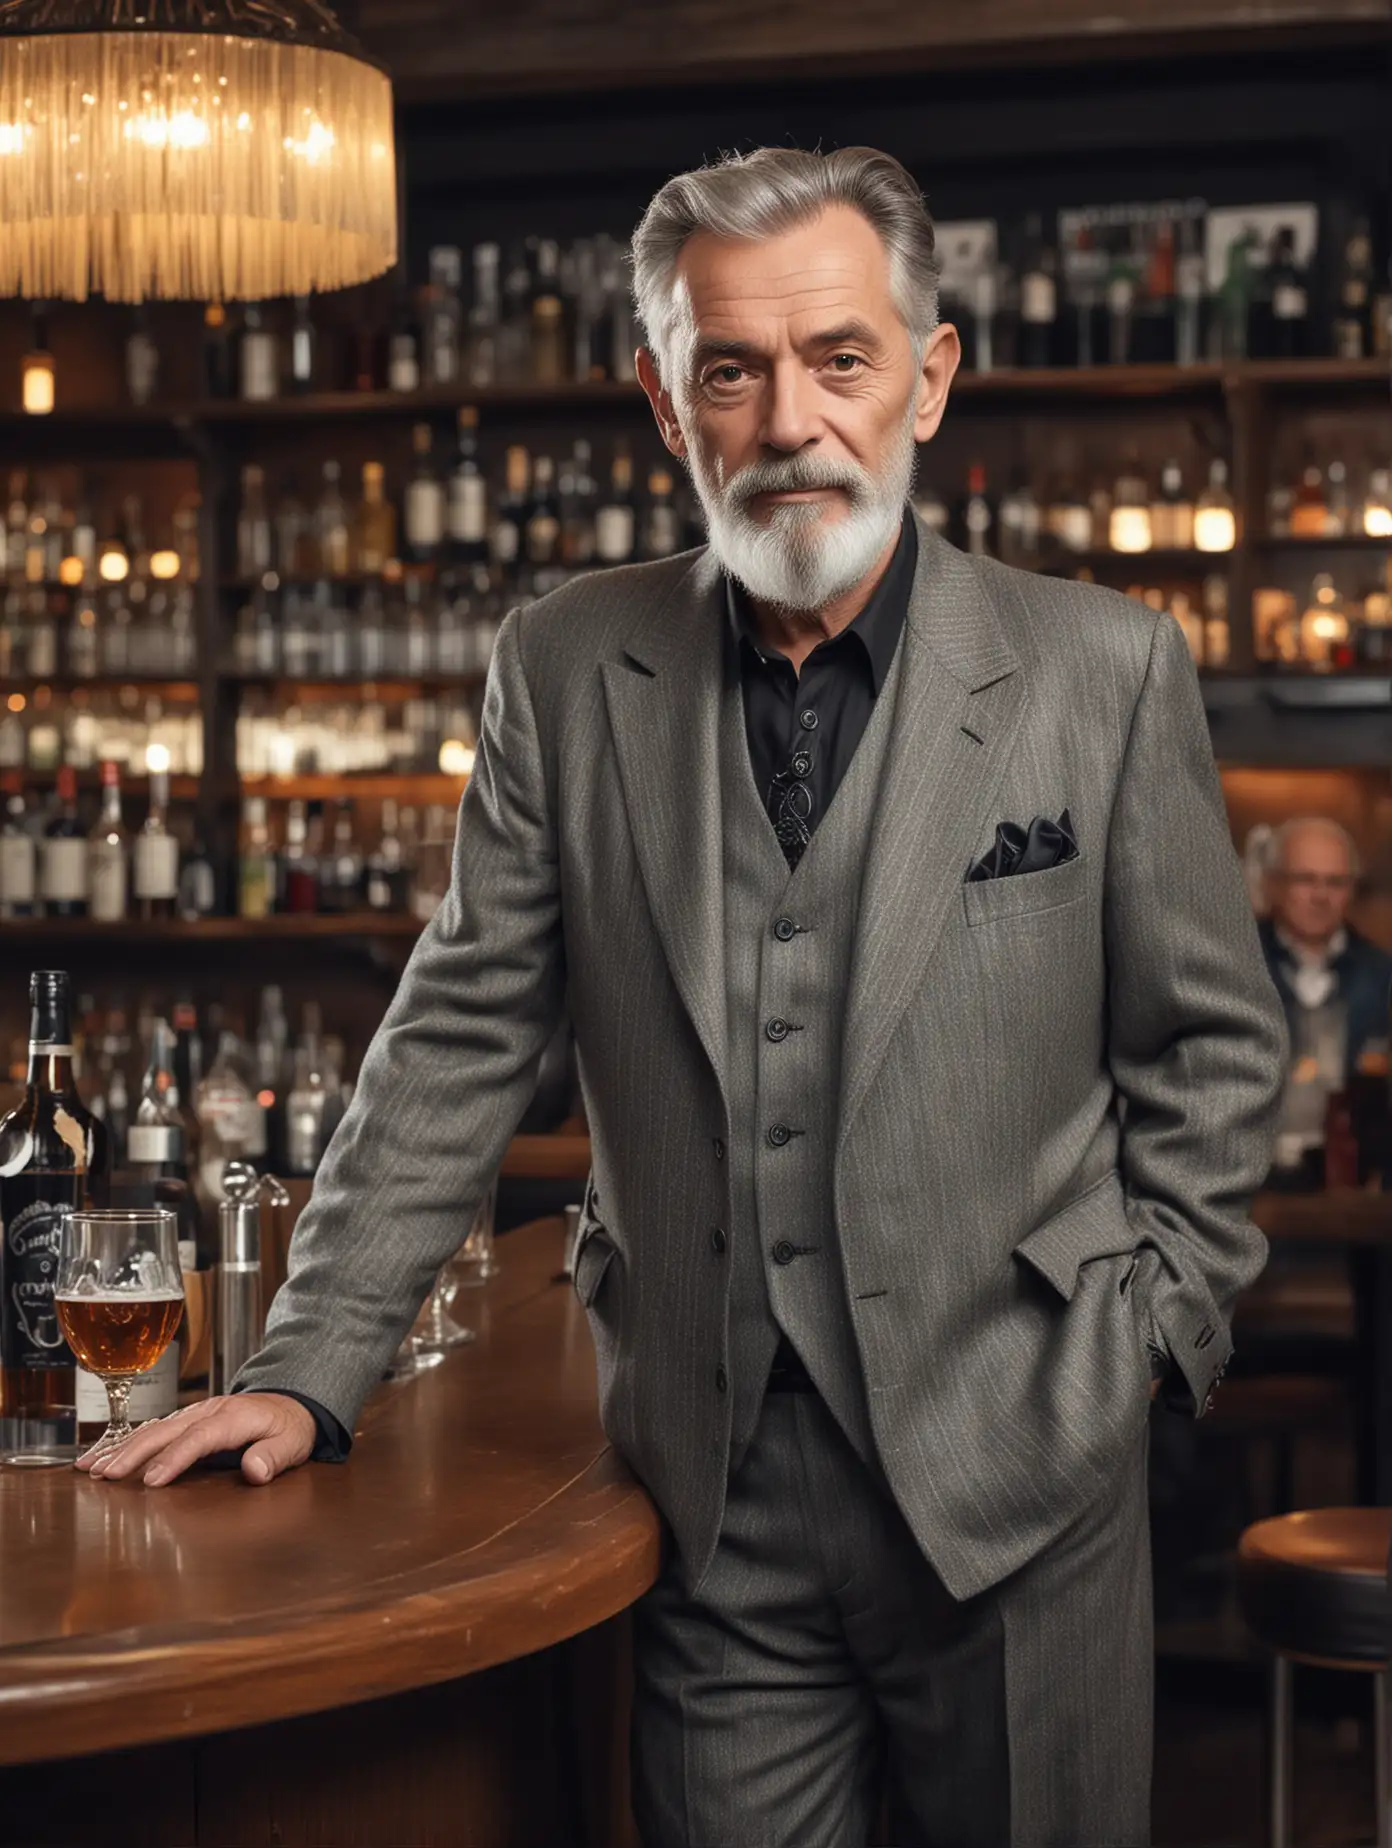 Stylish Middleaged Man Poses Elegantly in Bar Setting